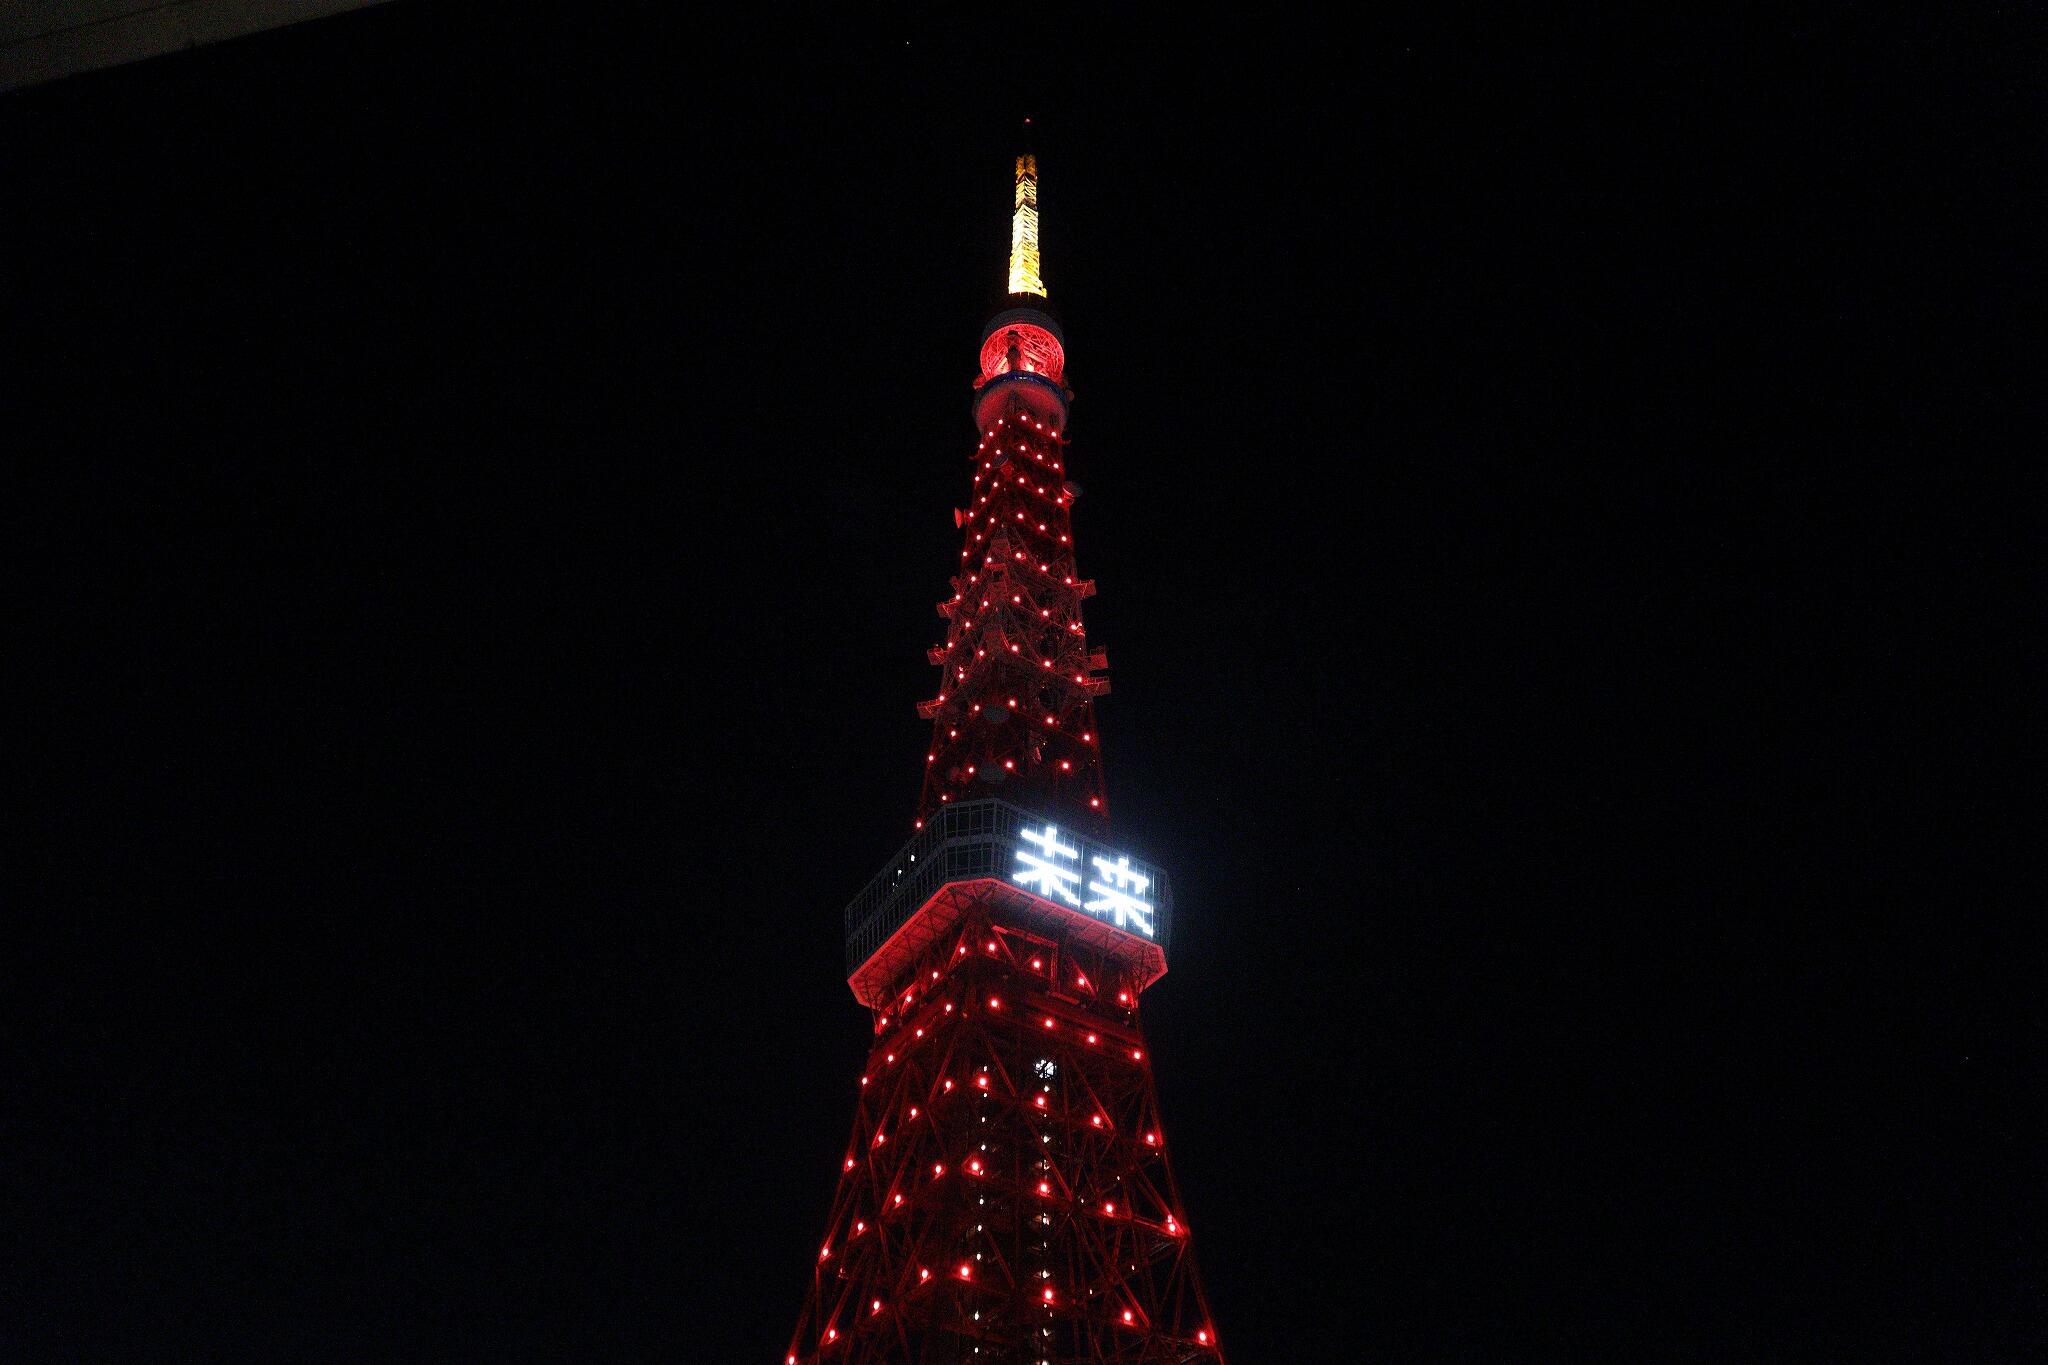 東京タワーが 春節色 に染まった夜 日中友好を願い点灯も 真下では 反中デモ の悲哀 J Cast ニュース 全文表示